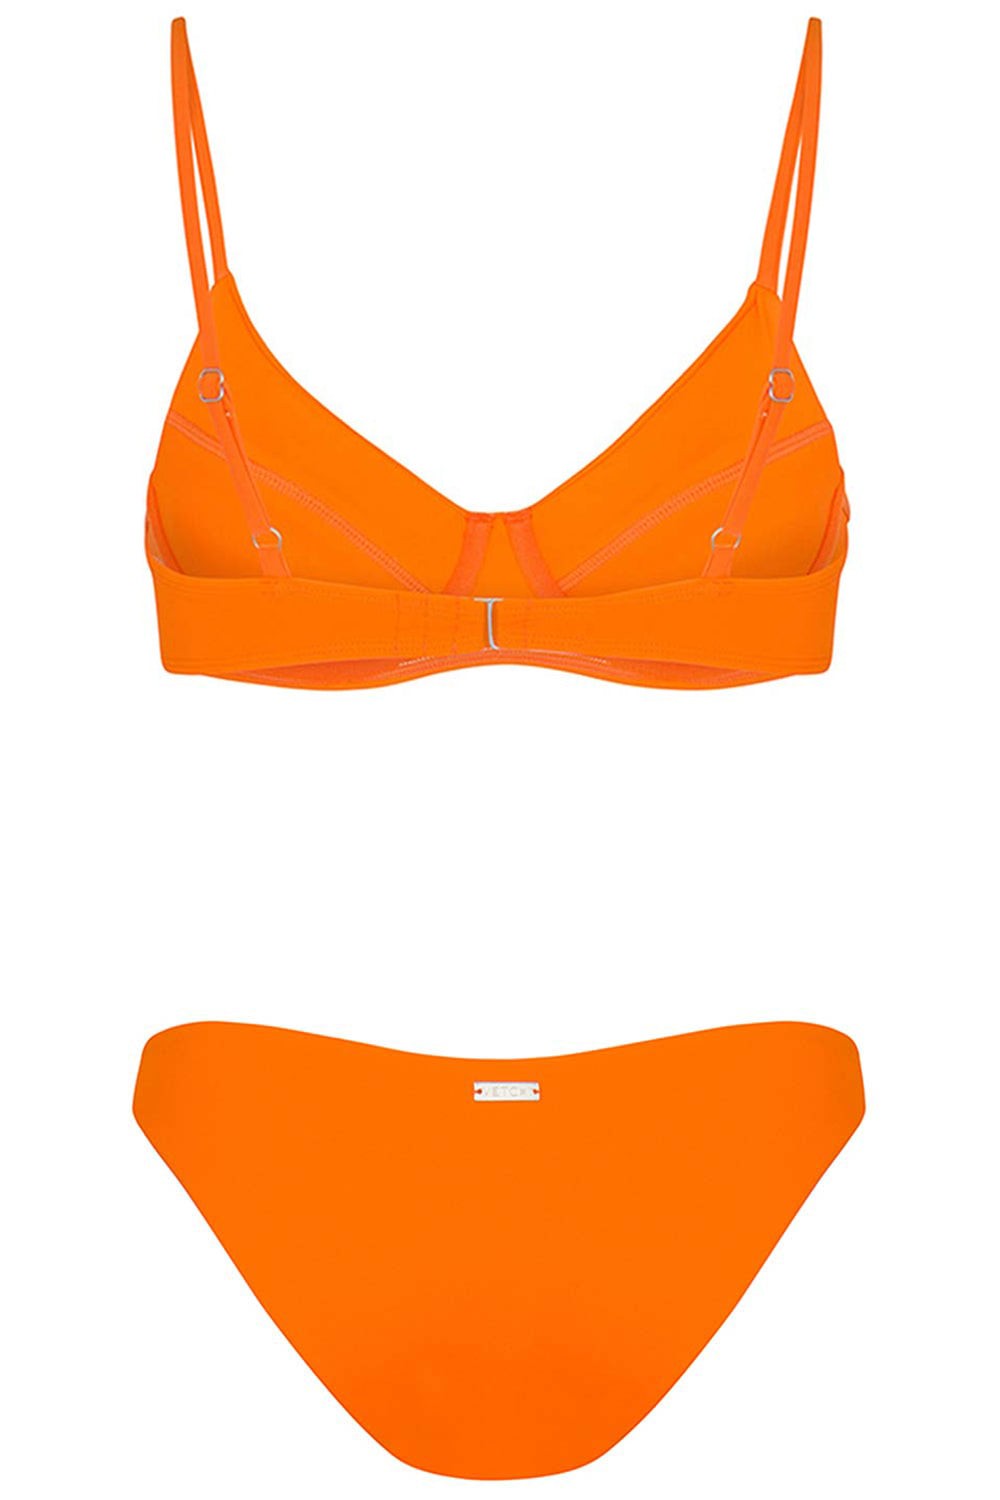 Destin Bikini Orange Set